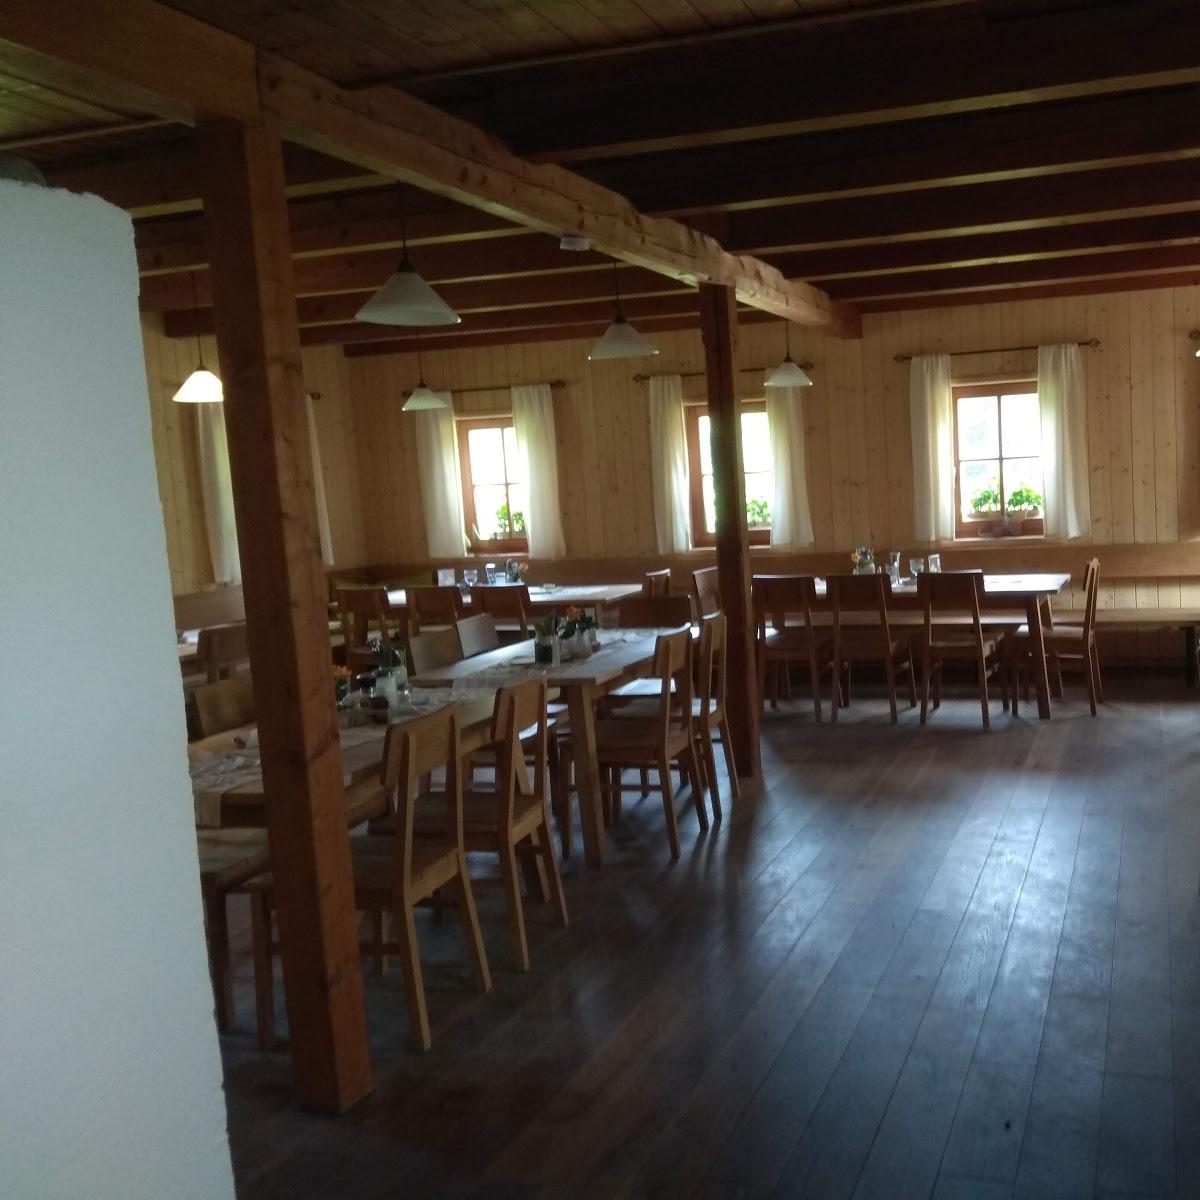 Restaurant "Haidsteiner Hütte" in Chamerau